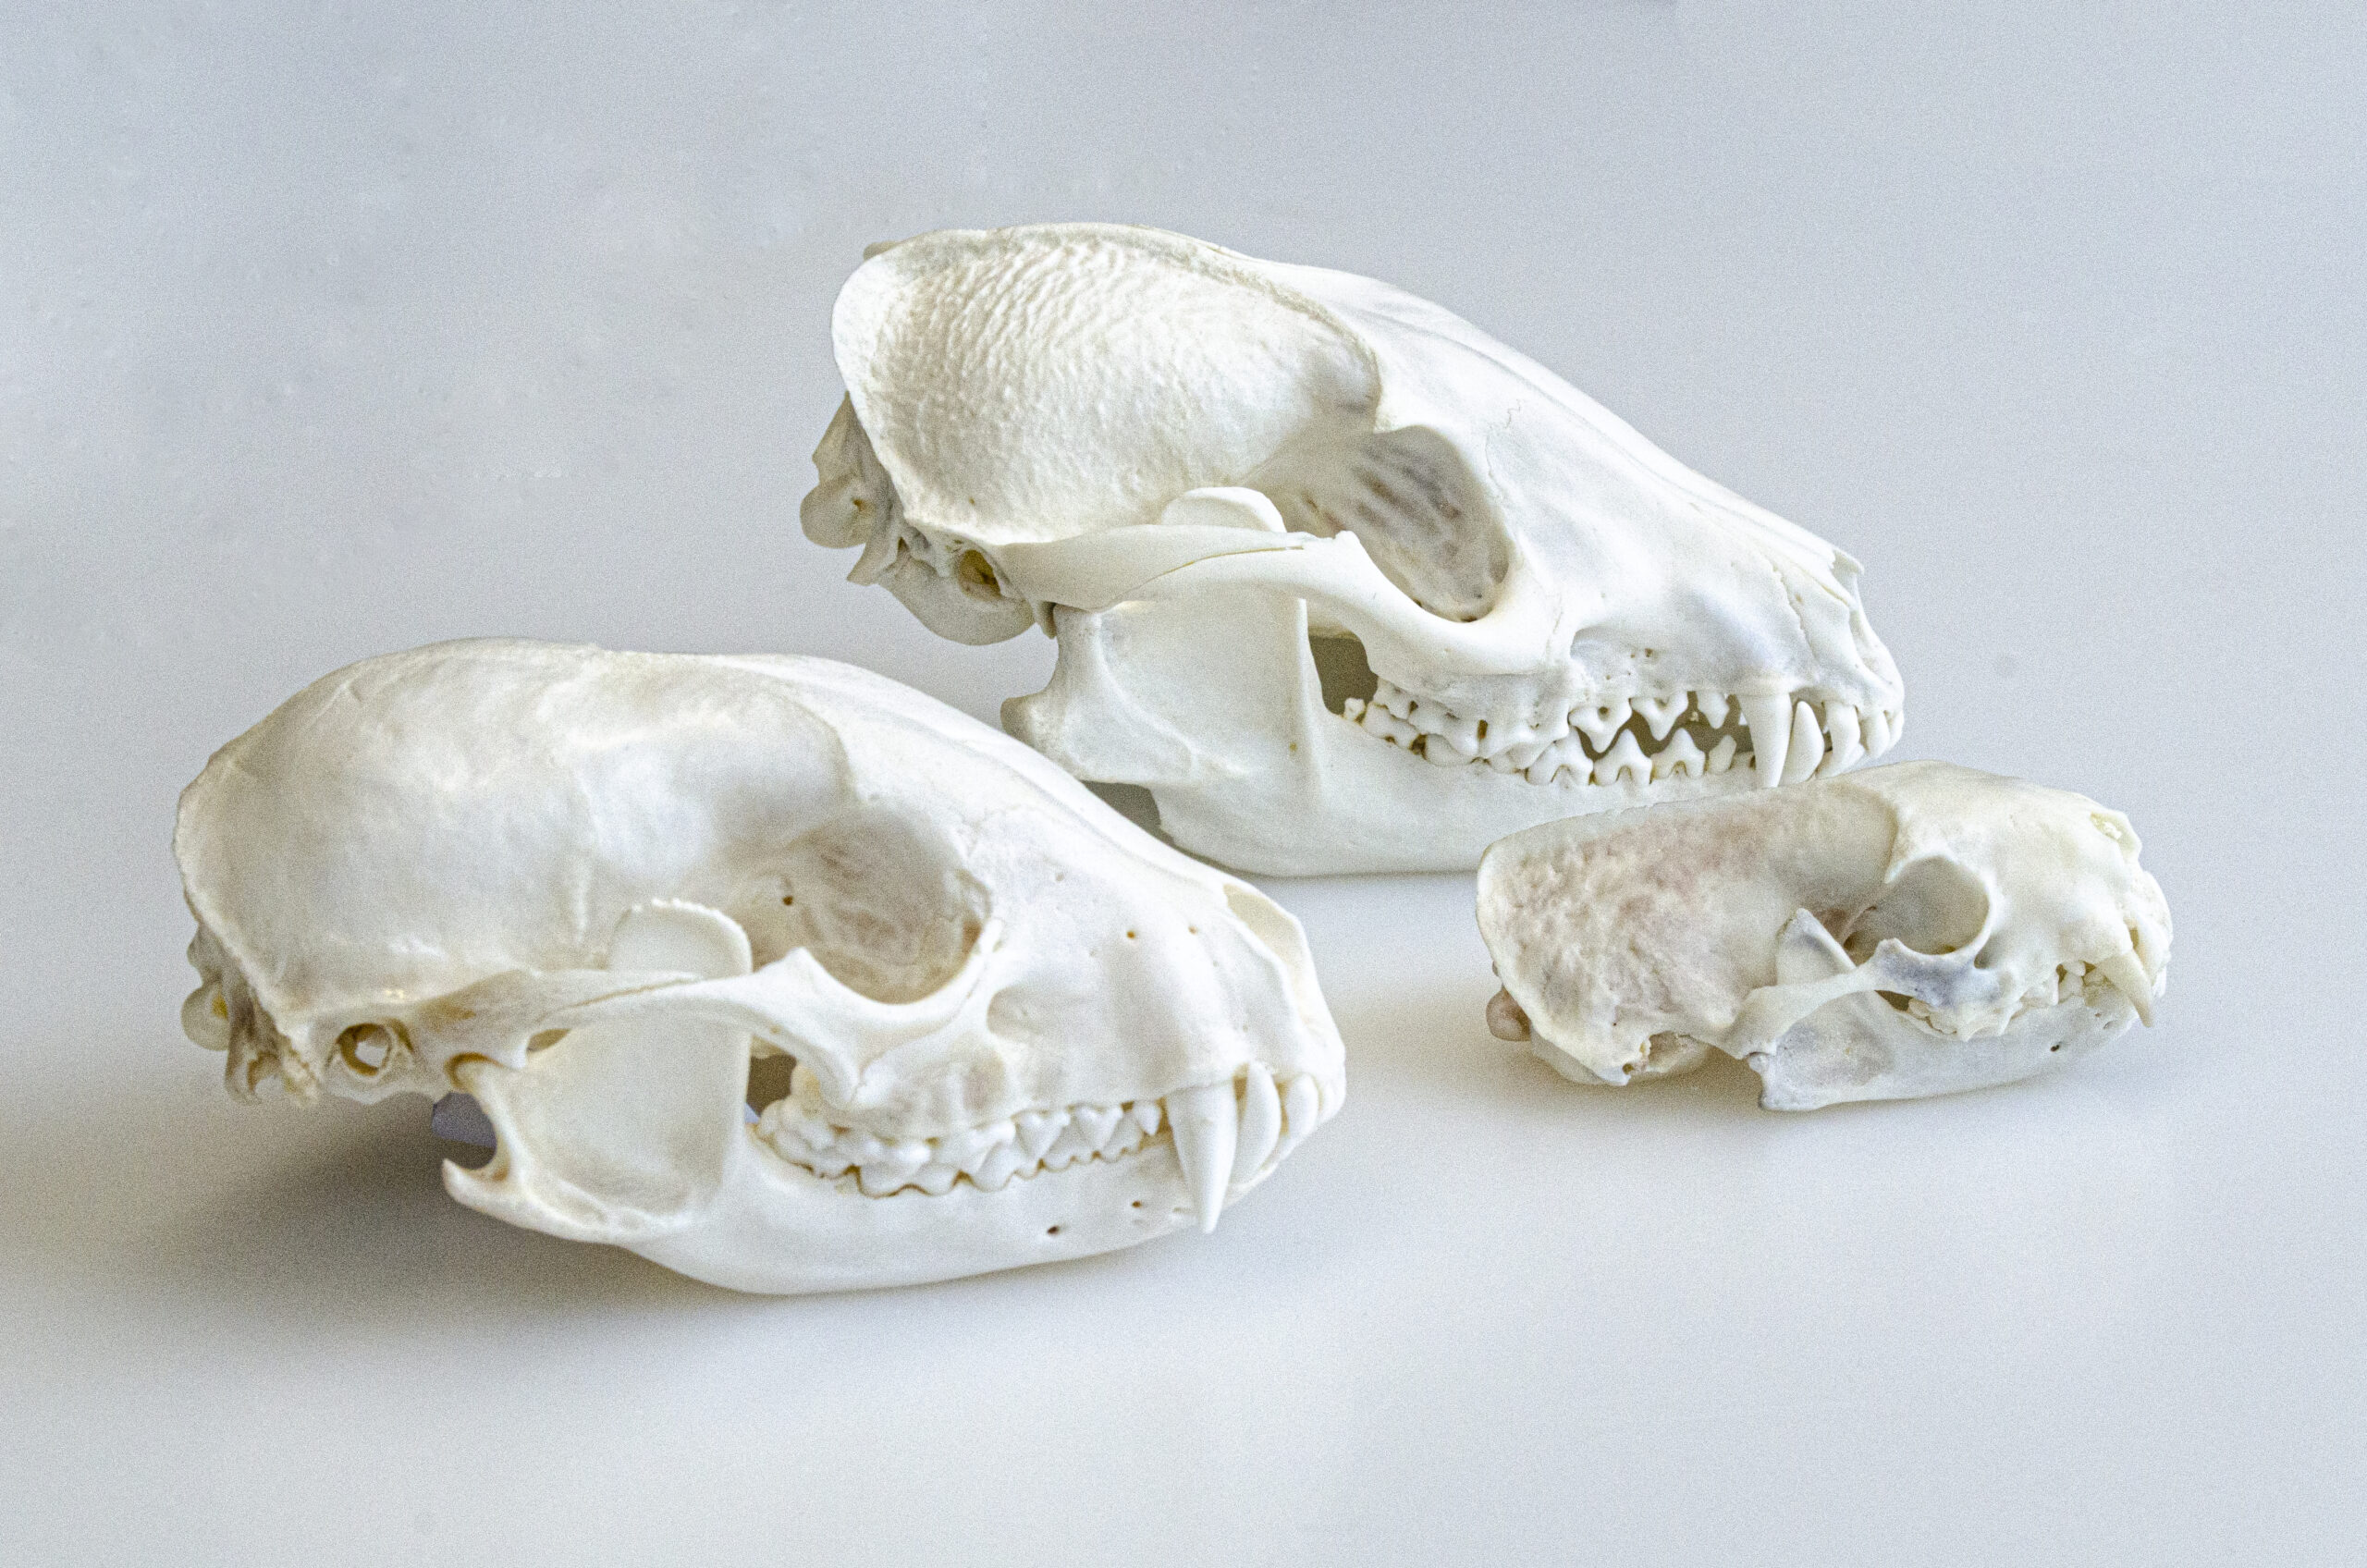 Die Schädel (links nach rechts) von Waschbär, Marderhund und Mink im Direktvergleich.